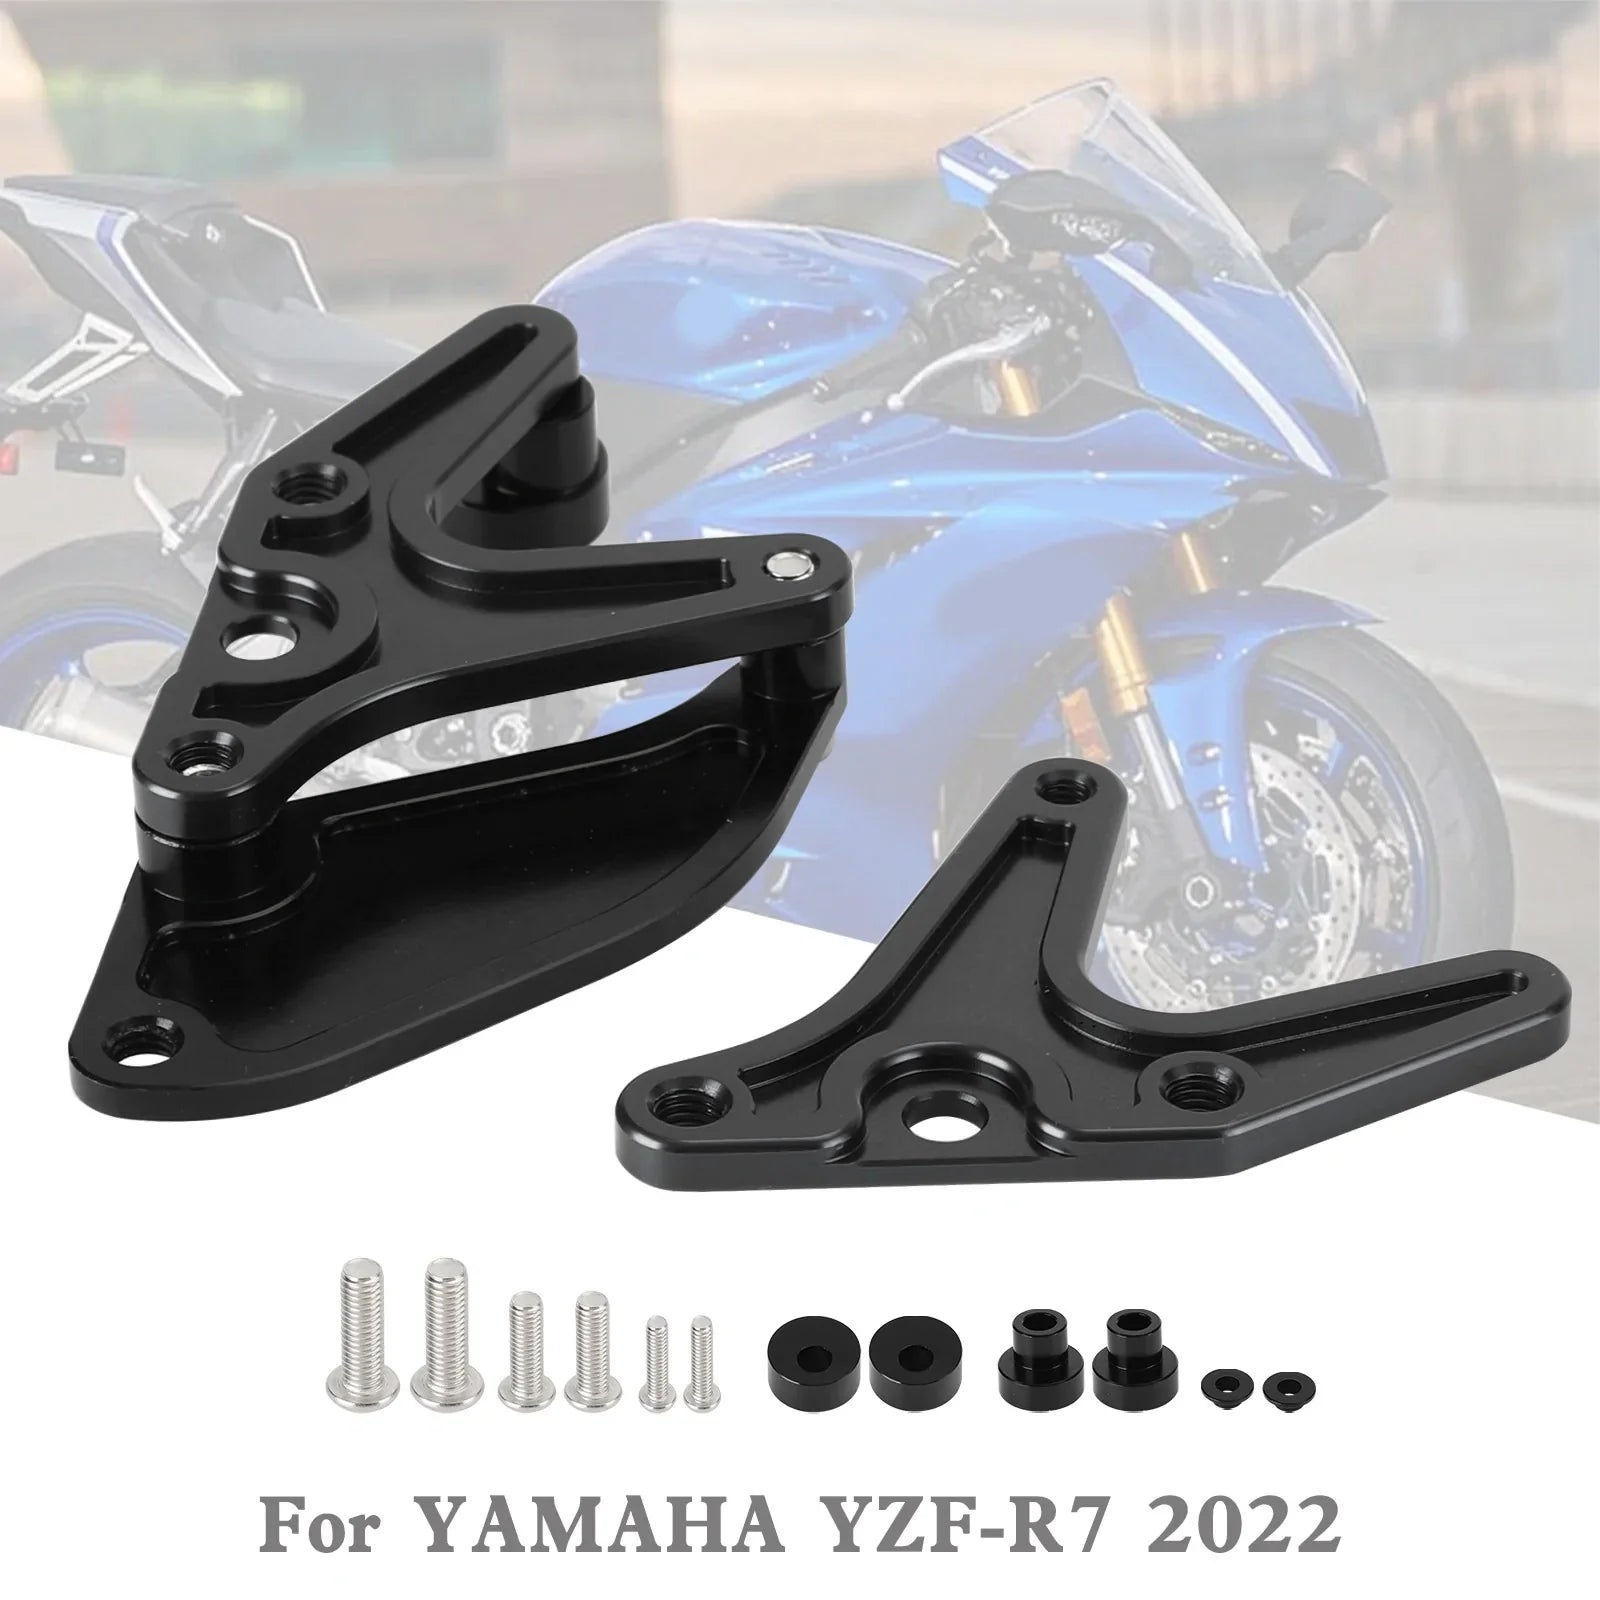 Le migliori offerte per Yamaha YZF-R7 R7 2022 Cavalletto Moto Alluminio Gancio Pignone Toe Guard sono su ✓ Confronta prezzi e caratteristiche di prodotti nuovi e usati ✓ Molti articoli con consegna gratis!